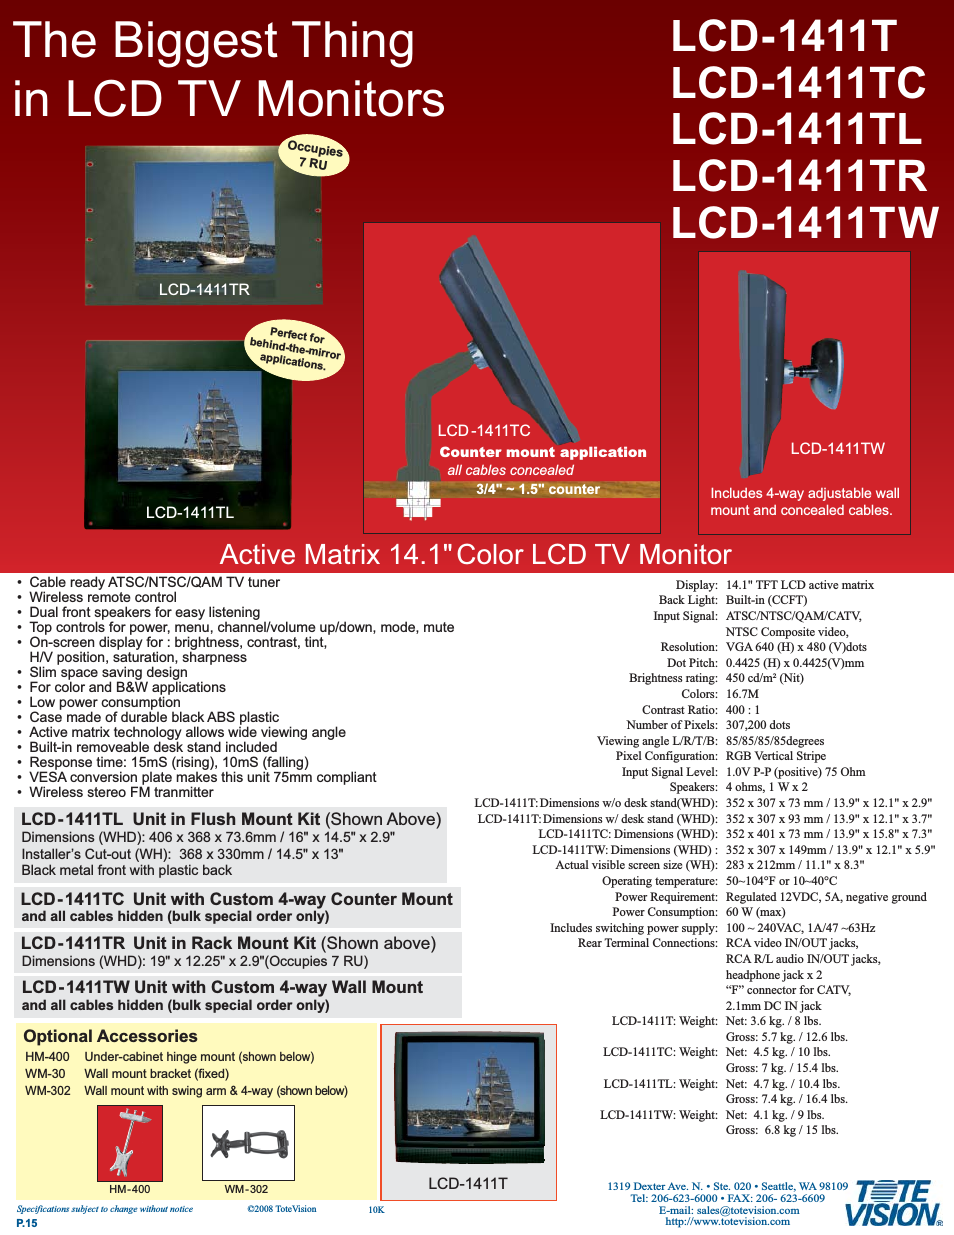 LCD-1411TW